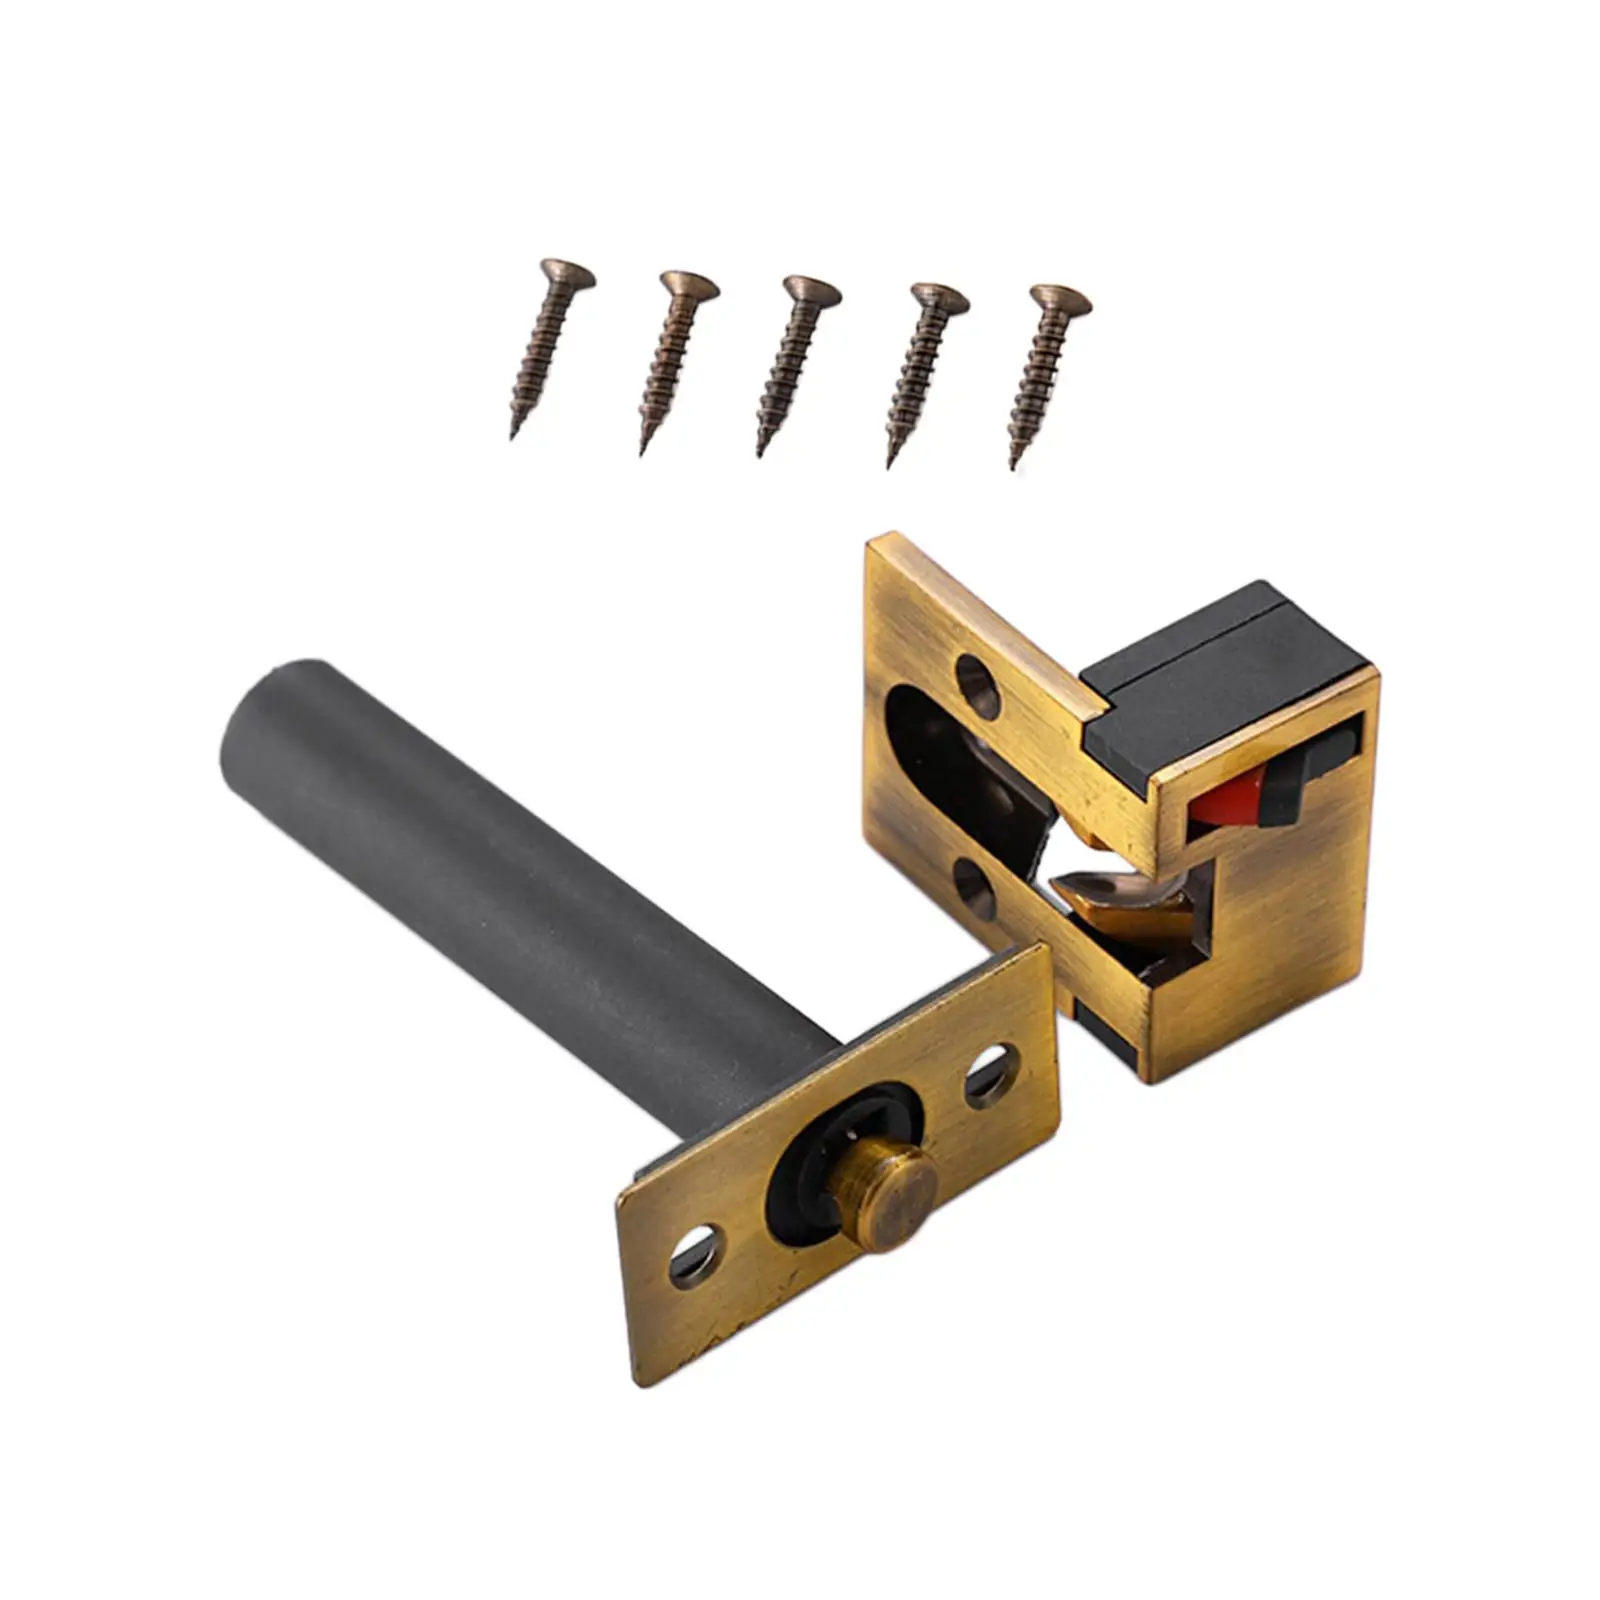 Door chain lock, durable, heavy duty door chain latch, easy to close